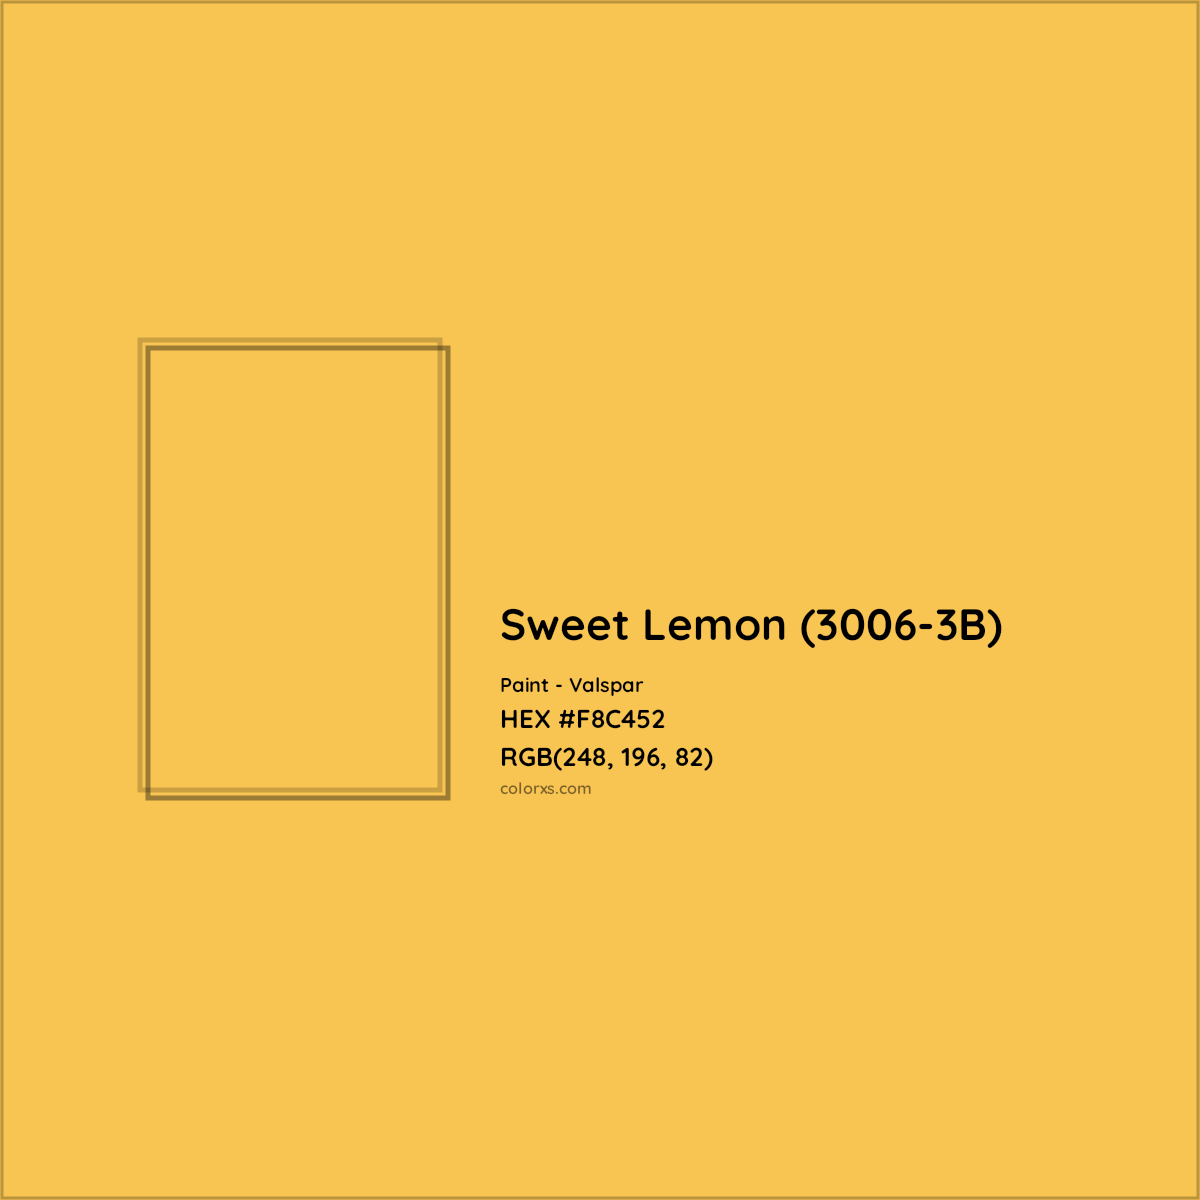 HEX #F8C452 Sweet Lemon (3006-3B) Paint Valspar - Color Code